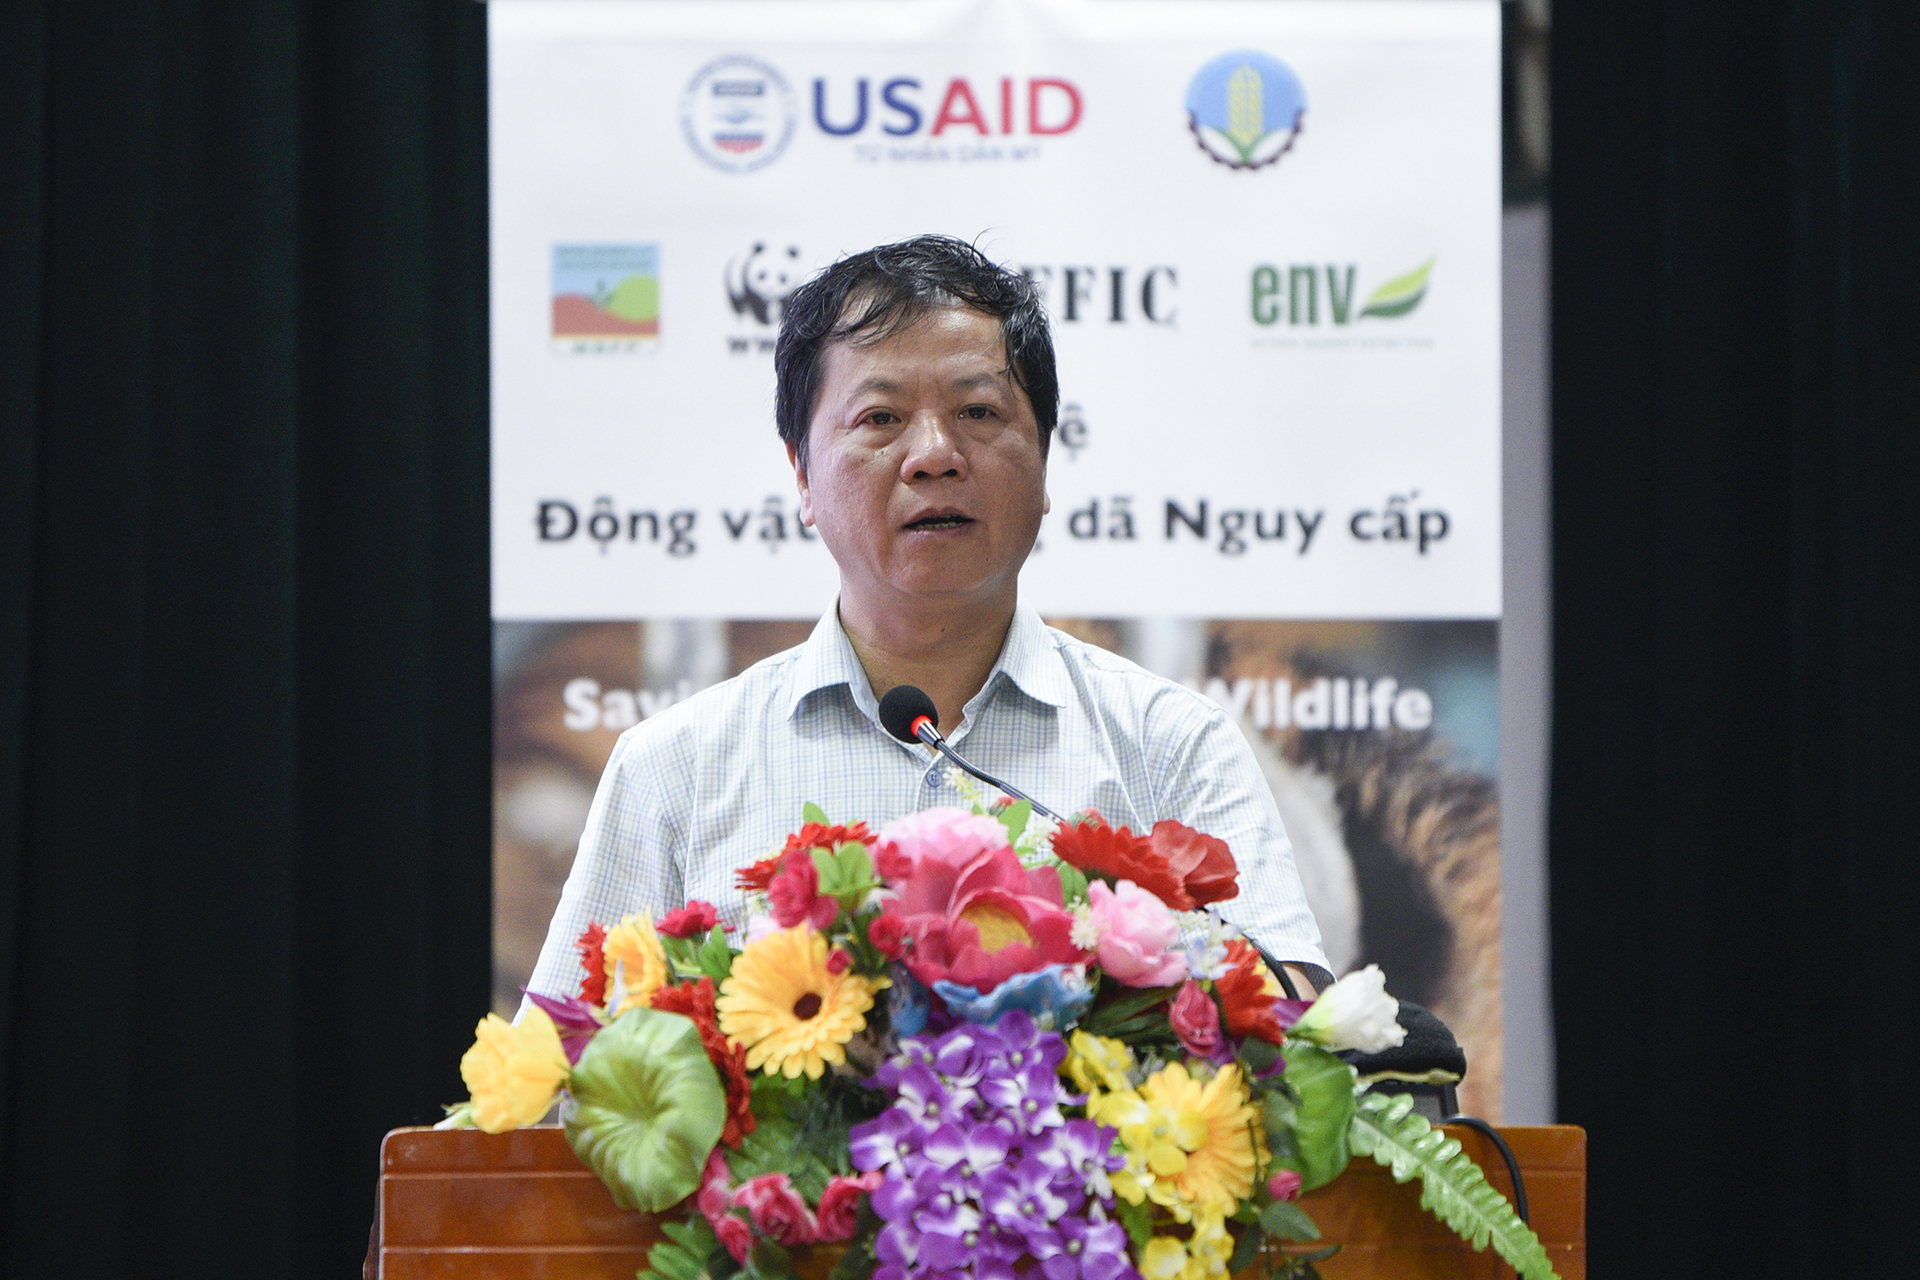 Ông Đỗ Quang Tùng, Giám đốc Ban Quản lý dự án lâm nghiệp phát biểu khai mạc. Ảnh: Tùng Đinh.